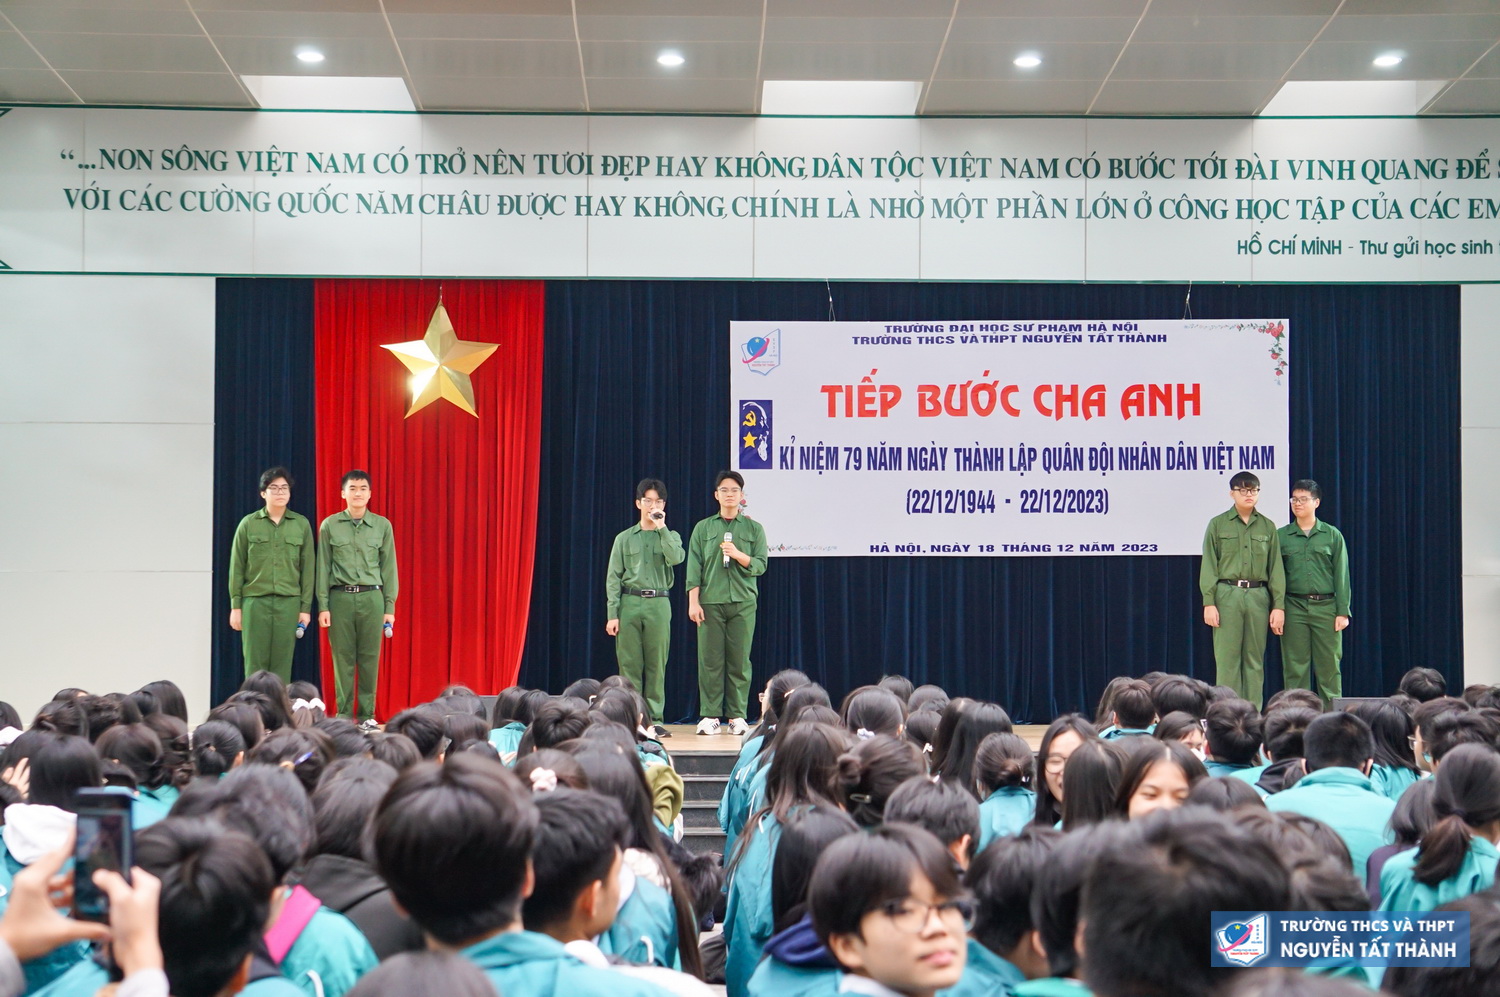 Tiếp bước cha anh - Kỉ niệm 79 năm ngày thành lập Quân đội Nhân dân Việt Nam